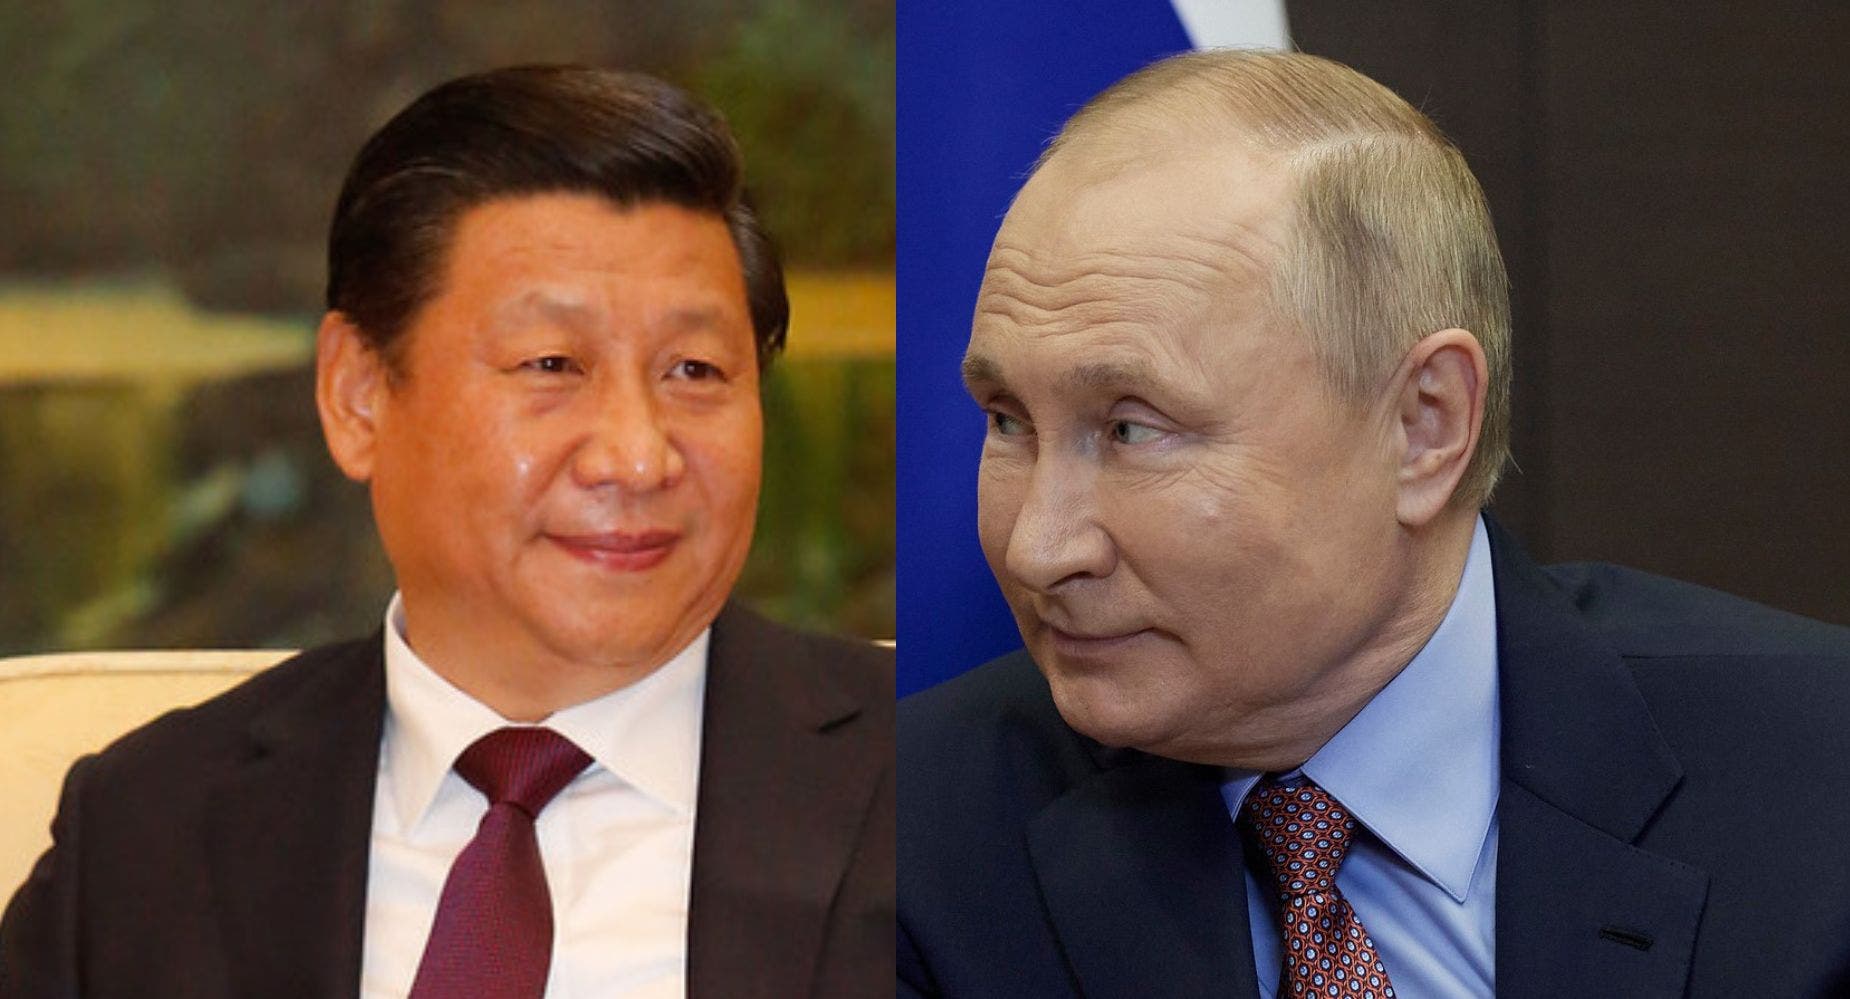 Xi Jinping May Be Planning To Meet Vladimir Putin In Response To Pelosi Taiwan Visit